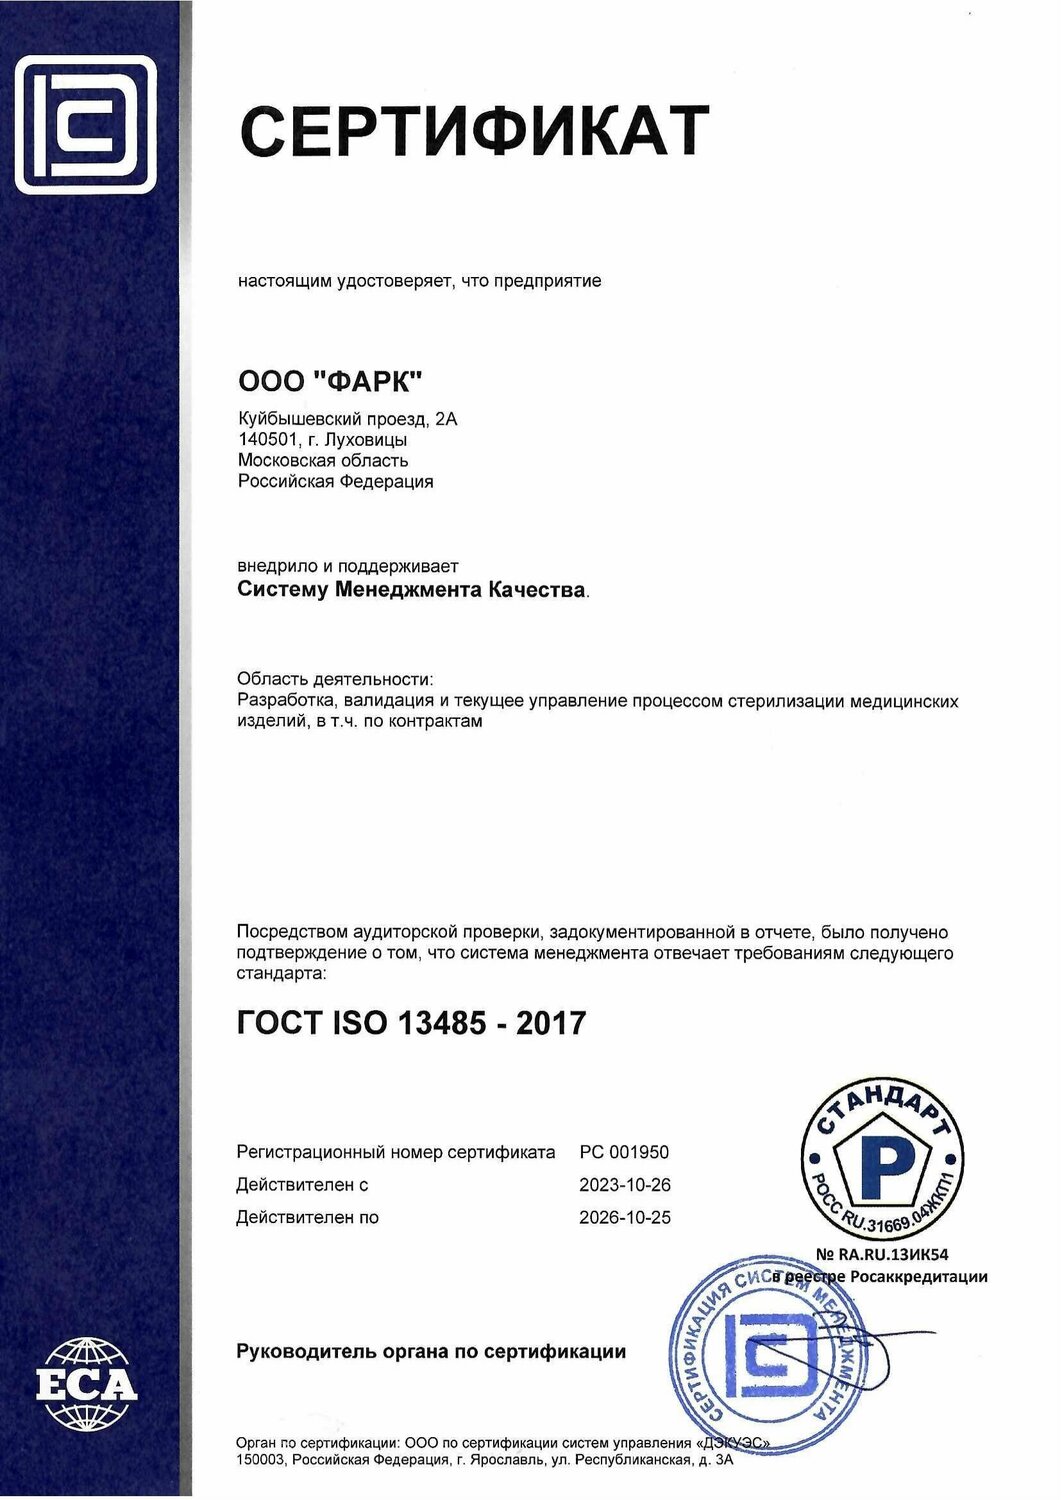 Сертификат ГОСТ ISO 13485 ООО "ФАРК"